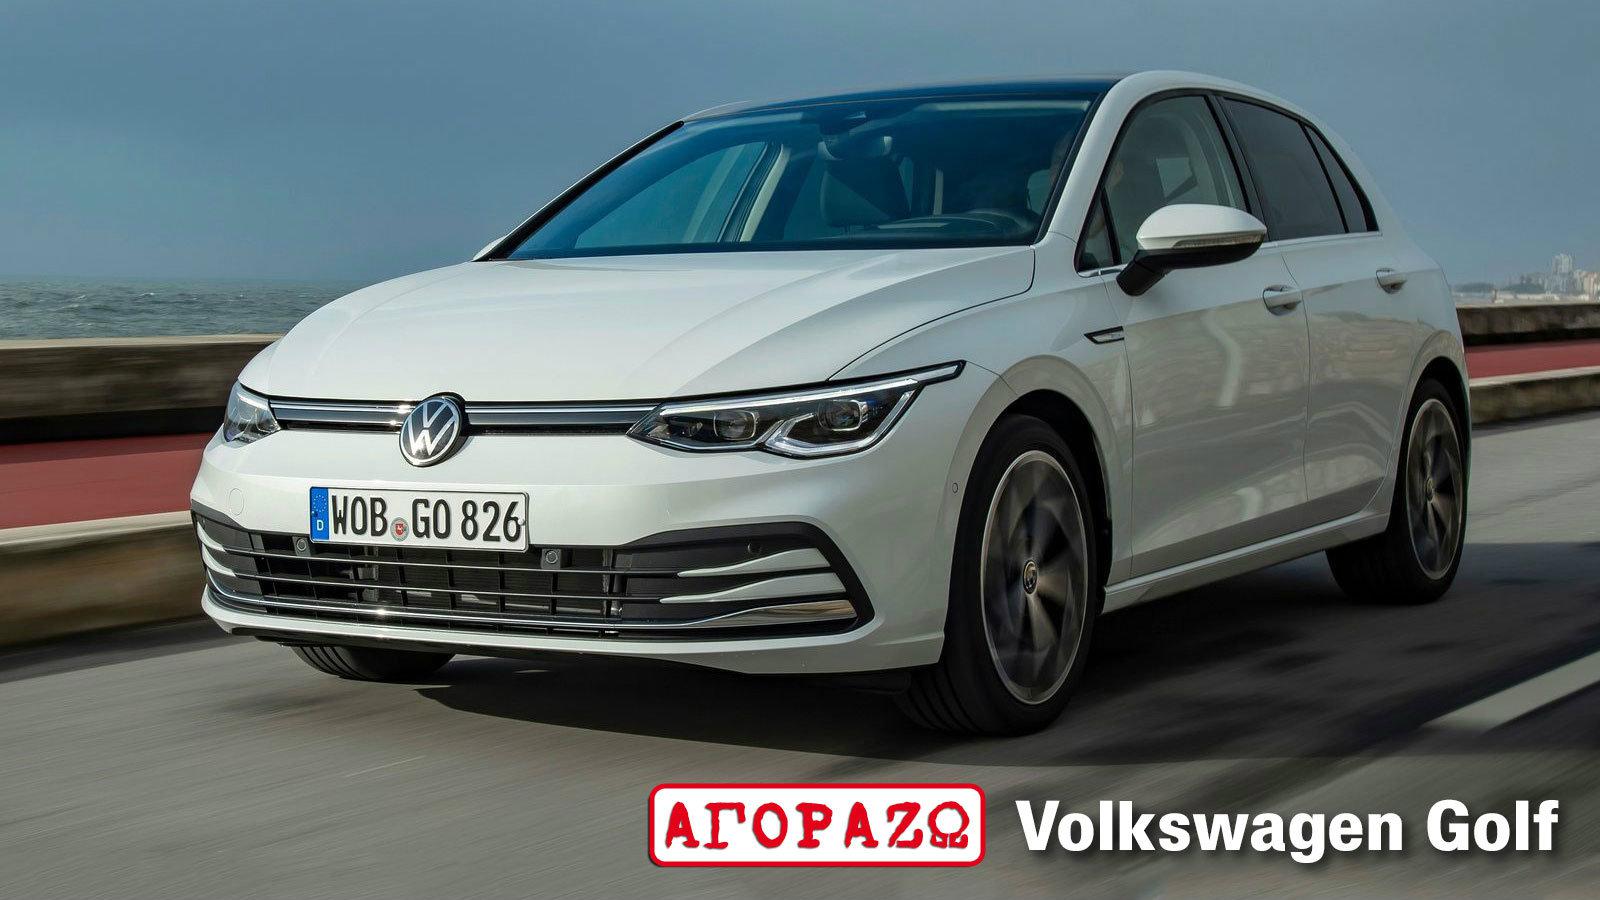 Ετοιμοπαράδοτα Volkswagen με όφελος έως 2.500 ευρώ